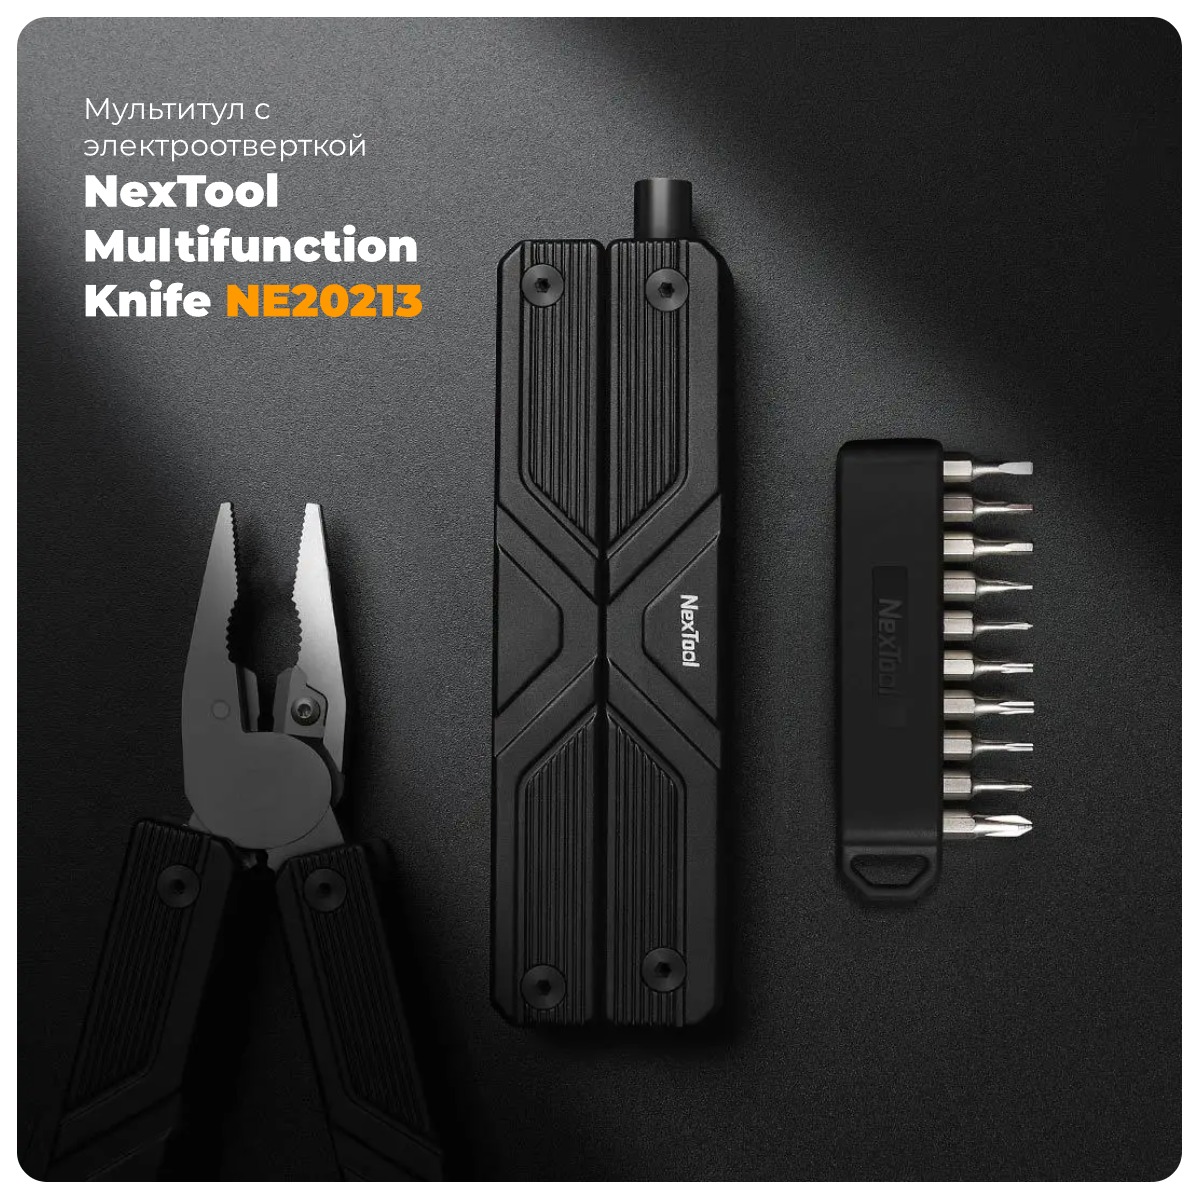 NexTool-Multifunction-Knife-NE20213-01